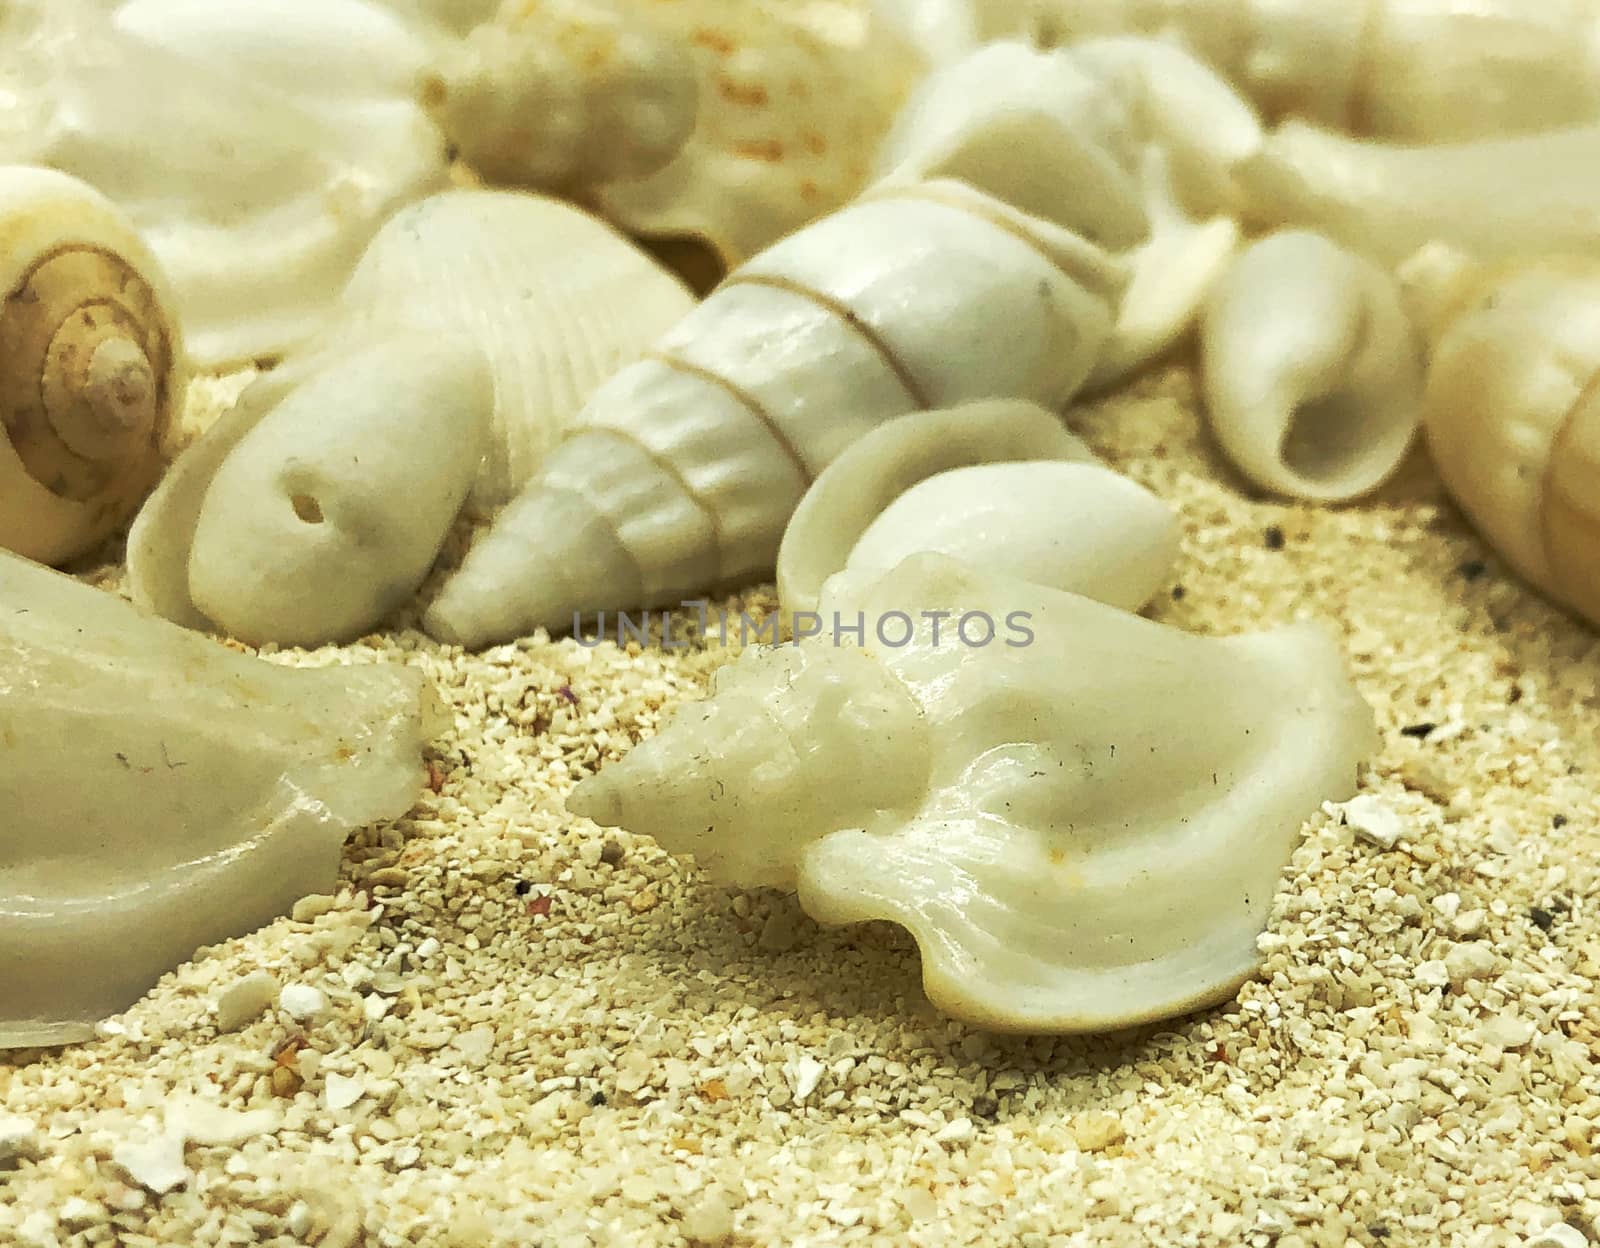 ocean sea shellfish  closeup on sand texture detail summer season travel beach  by F1b0nacci